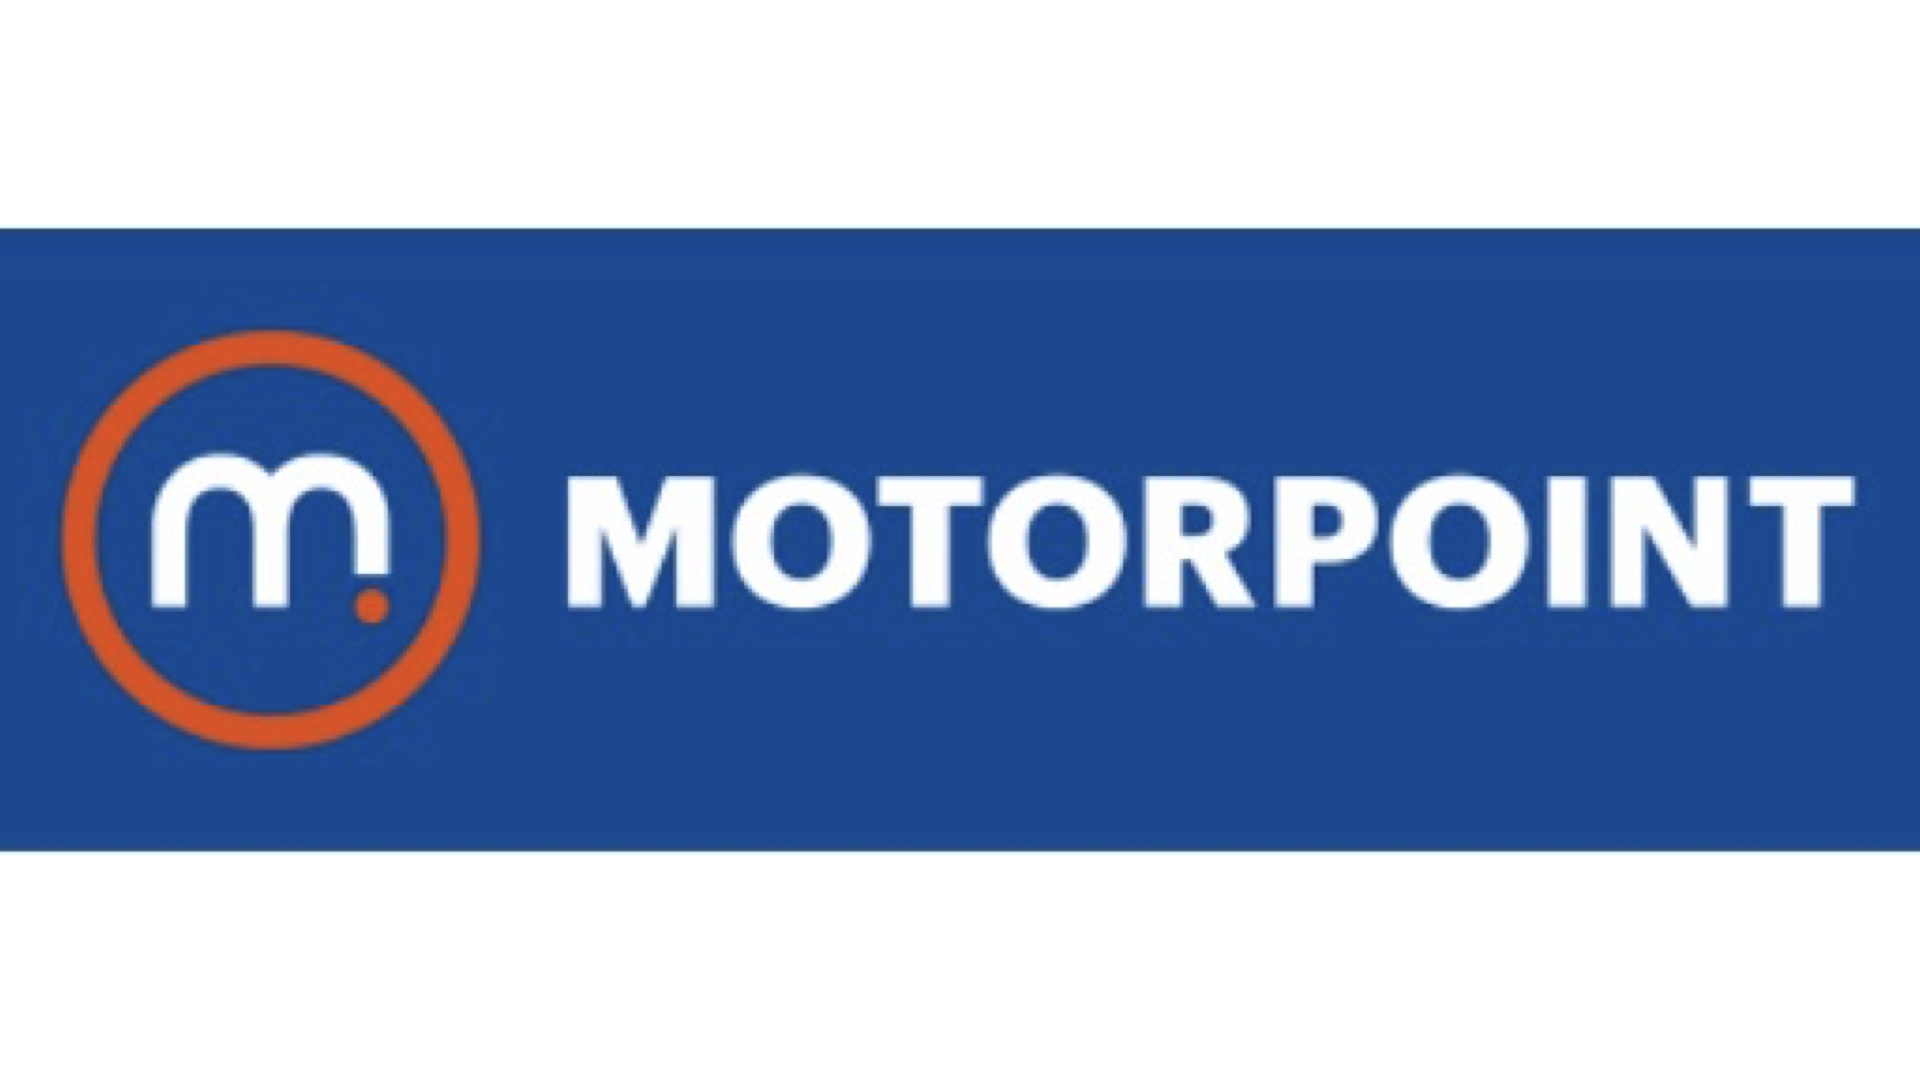 Motorpoint